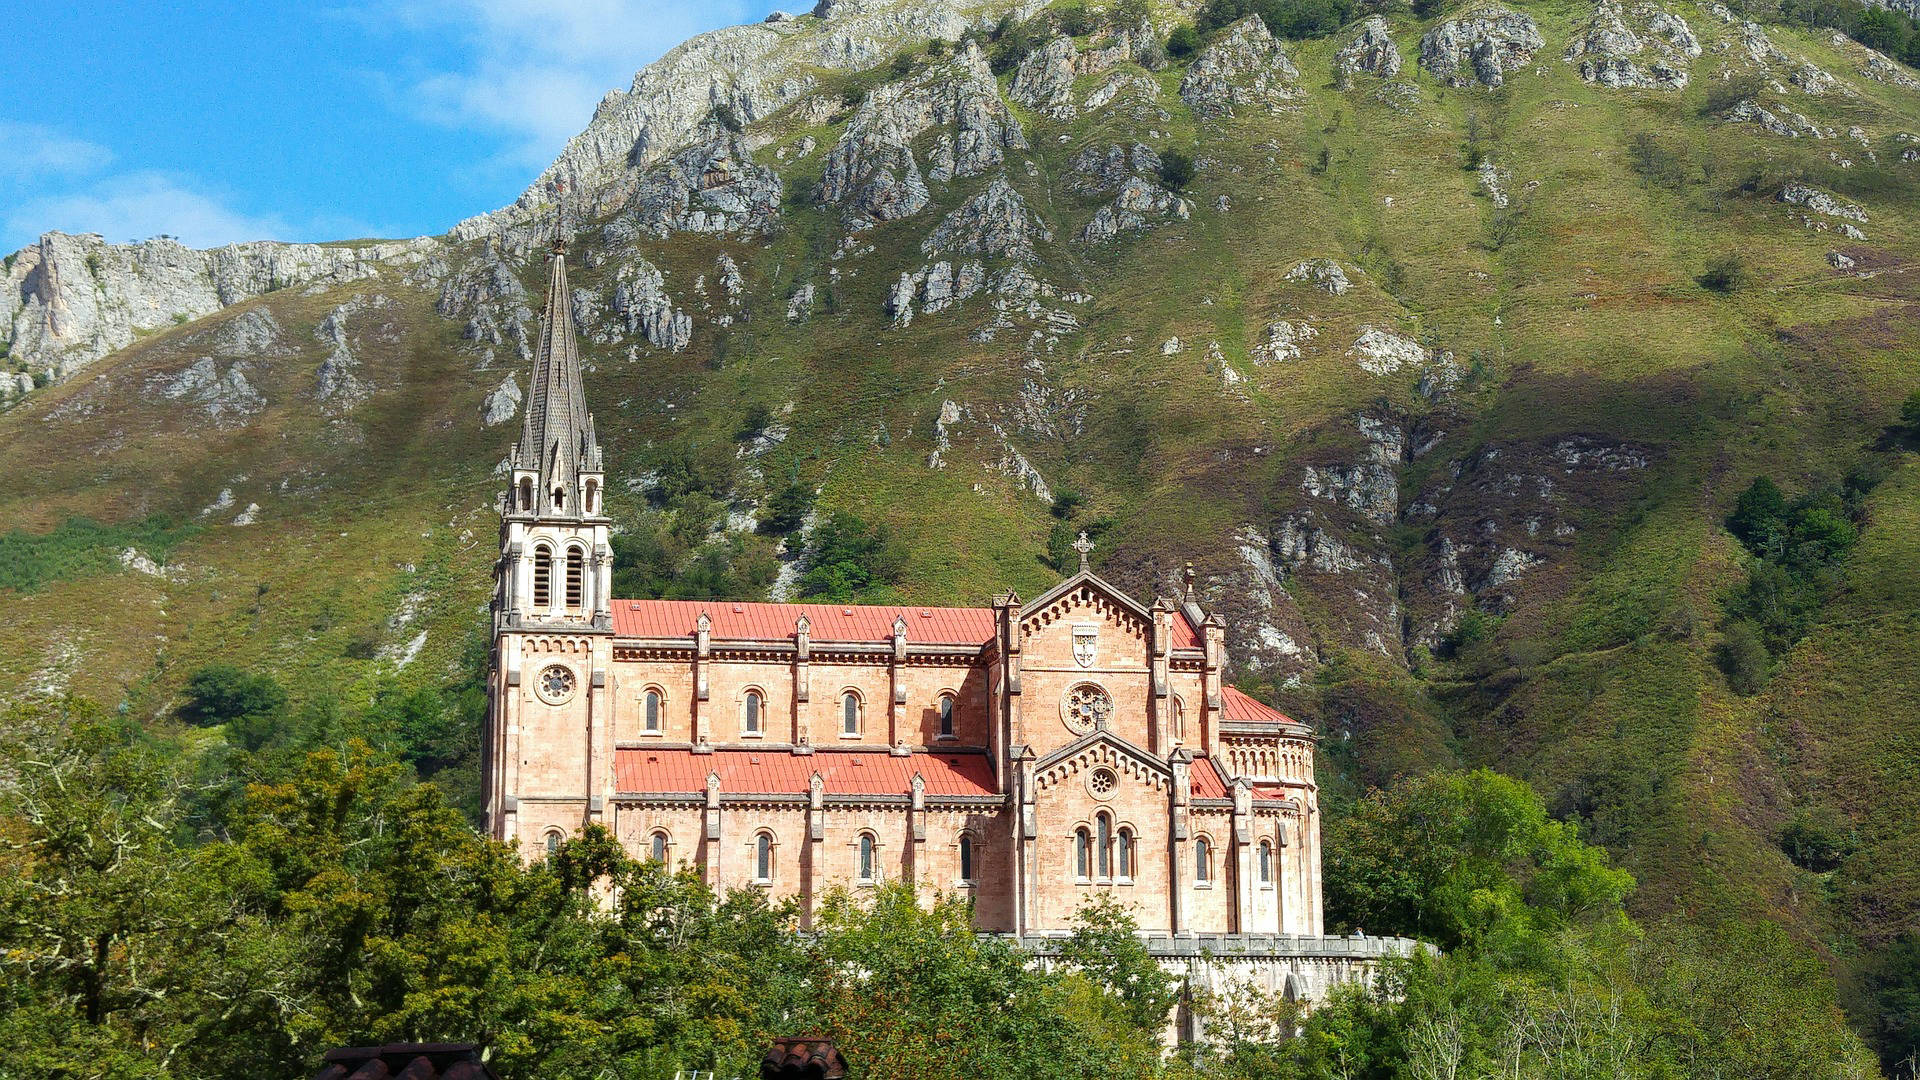 Basílica de Covadonga, Cangas de Onís